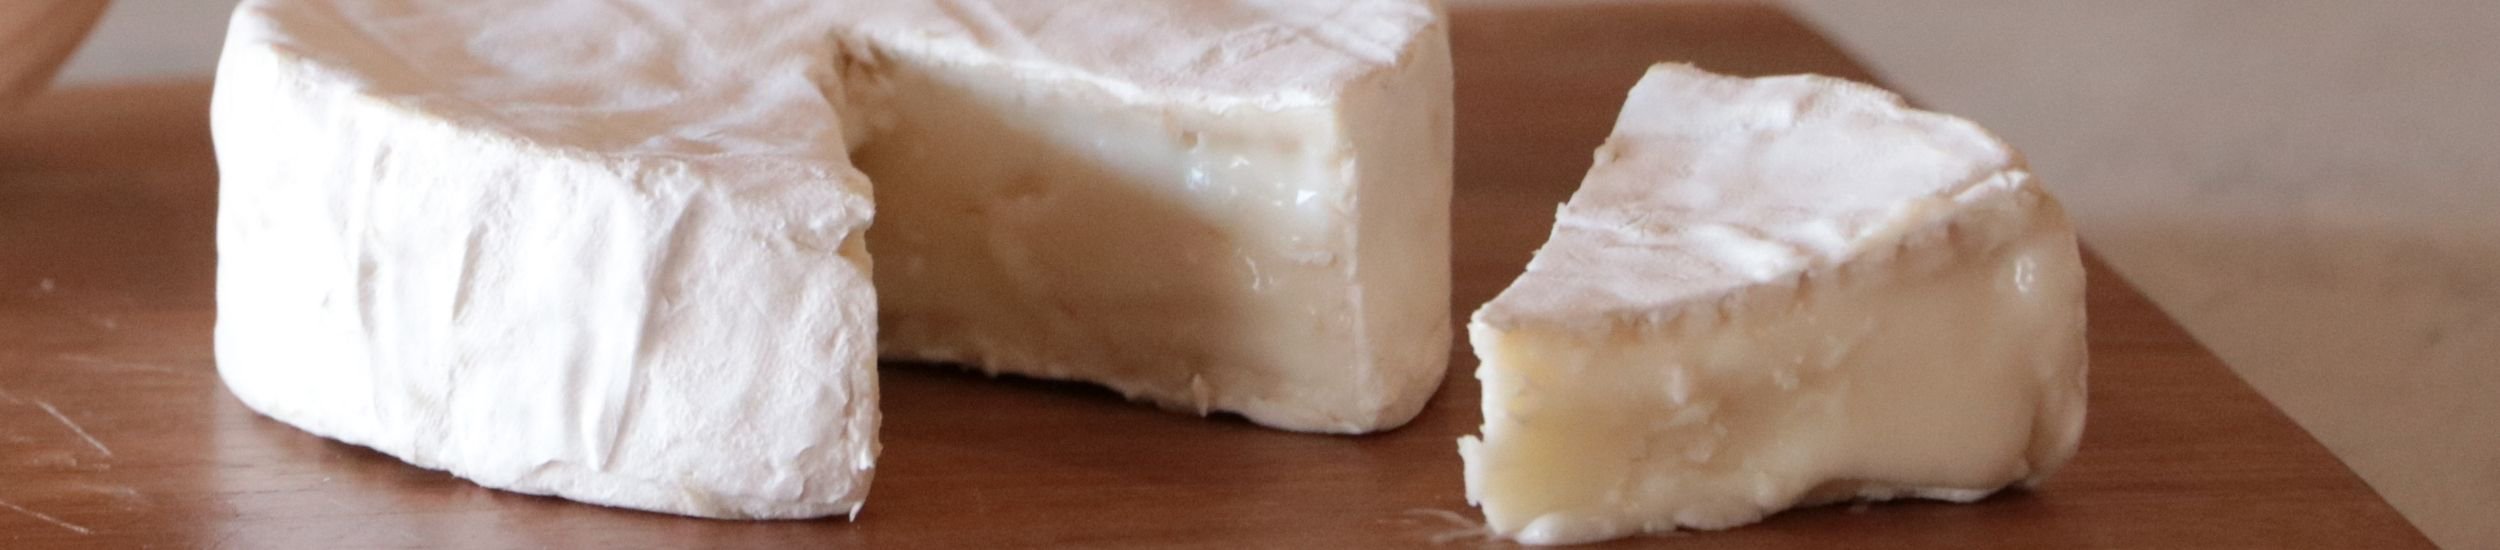 六甲山牧場の新鮮なミルクを使用した神戸チーズ